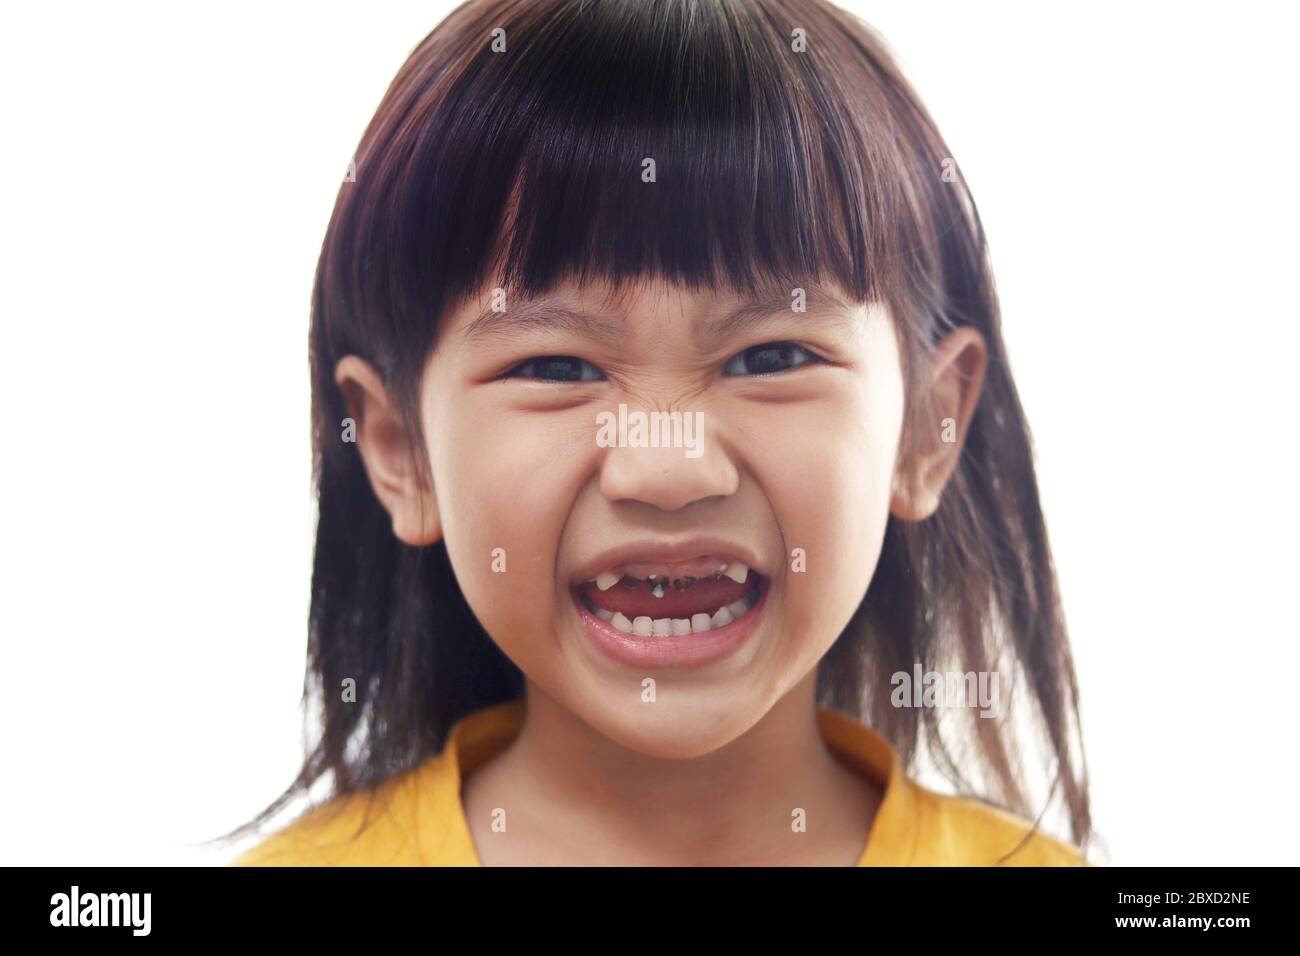 Petite fille asiatique montrant sa bouche ouverte pleine de caries dents de carie carie carie. Médecine dentaire et soins de santé. Caries à partir d'un âge précoce en raison de trop de CA sucré Banque D'Images